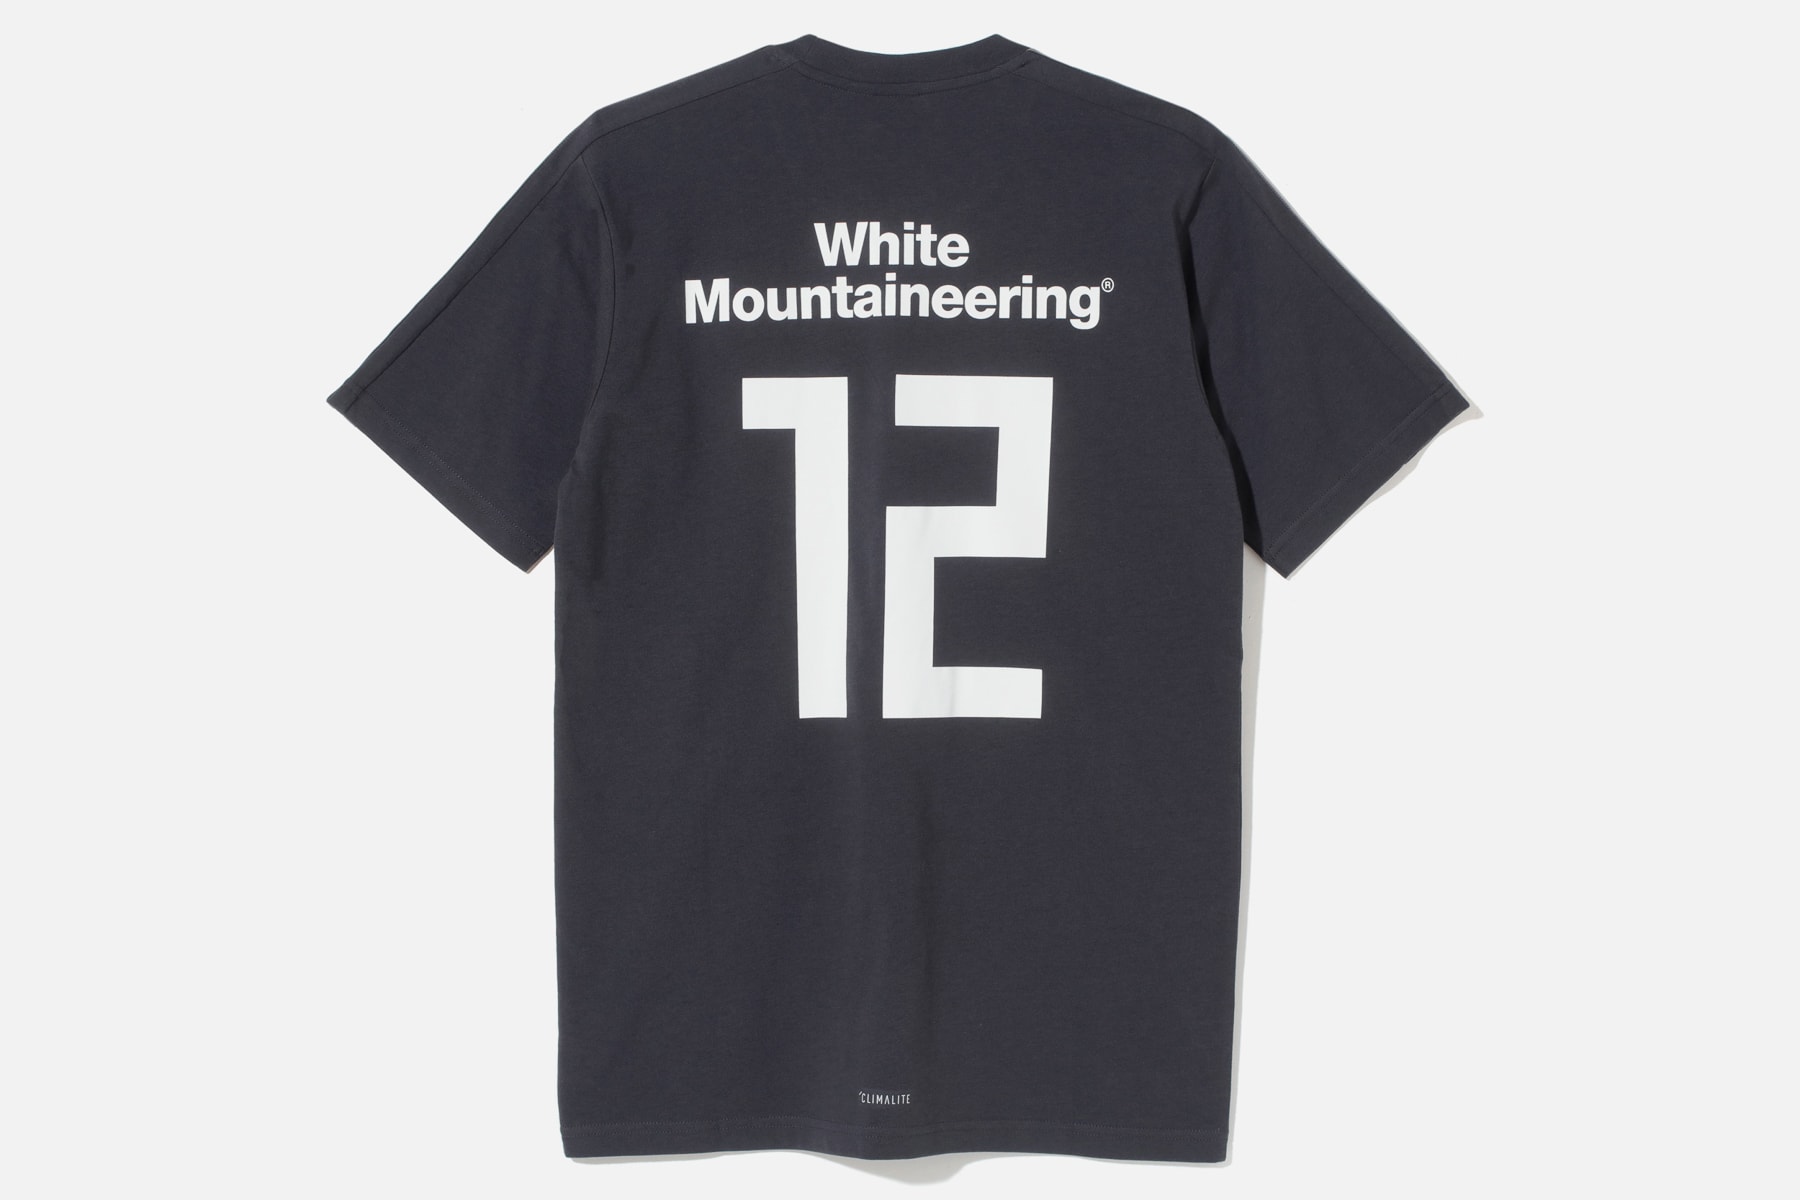 아디다스 FIFA 월드컵 '위닝' 컬렉션 - 베이프, 화이트 마운티니어링, 네이버후드 2018 adidas world cup bape neighborhood white mountaineering winning